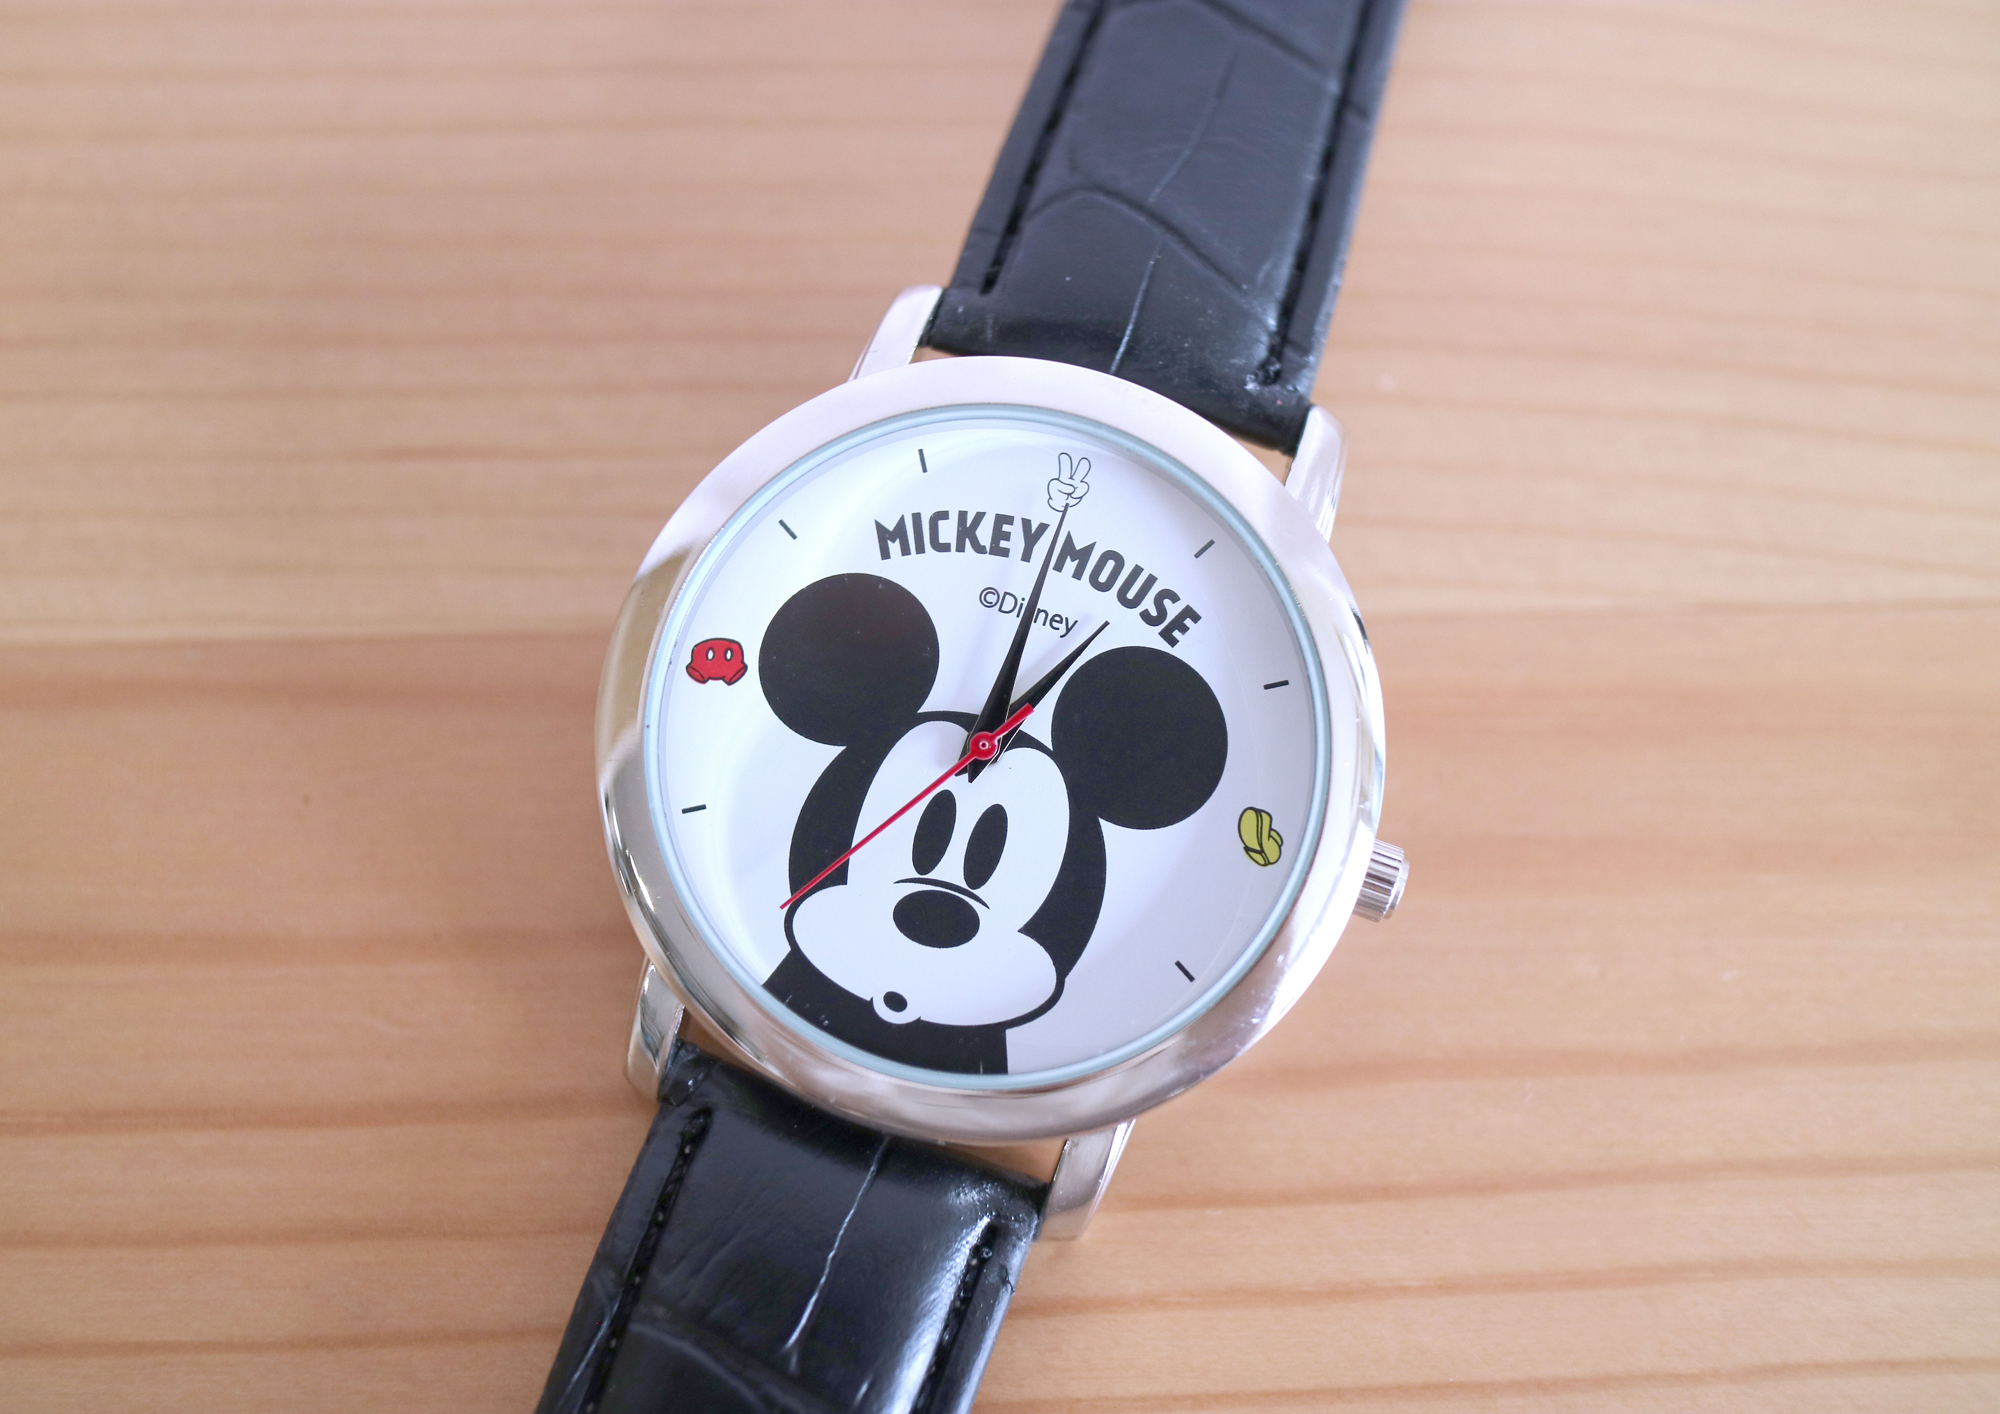 雑誌付録ダイアリー Steady 5月号の付録 ミッキーマウス 大人腕時計 を開封 大きめフェイス 太めのベルト 文字盤の時刻の一部が ミッキーのズボンなど可愛いイラストになっています Steady ステディ ミッキーマウス ミッキー 腕時計 雑誌付録